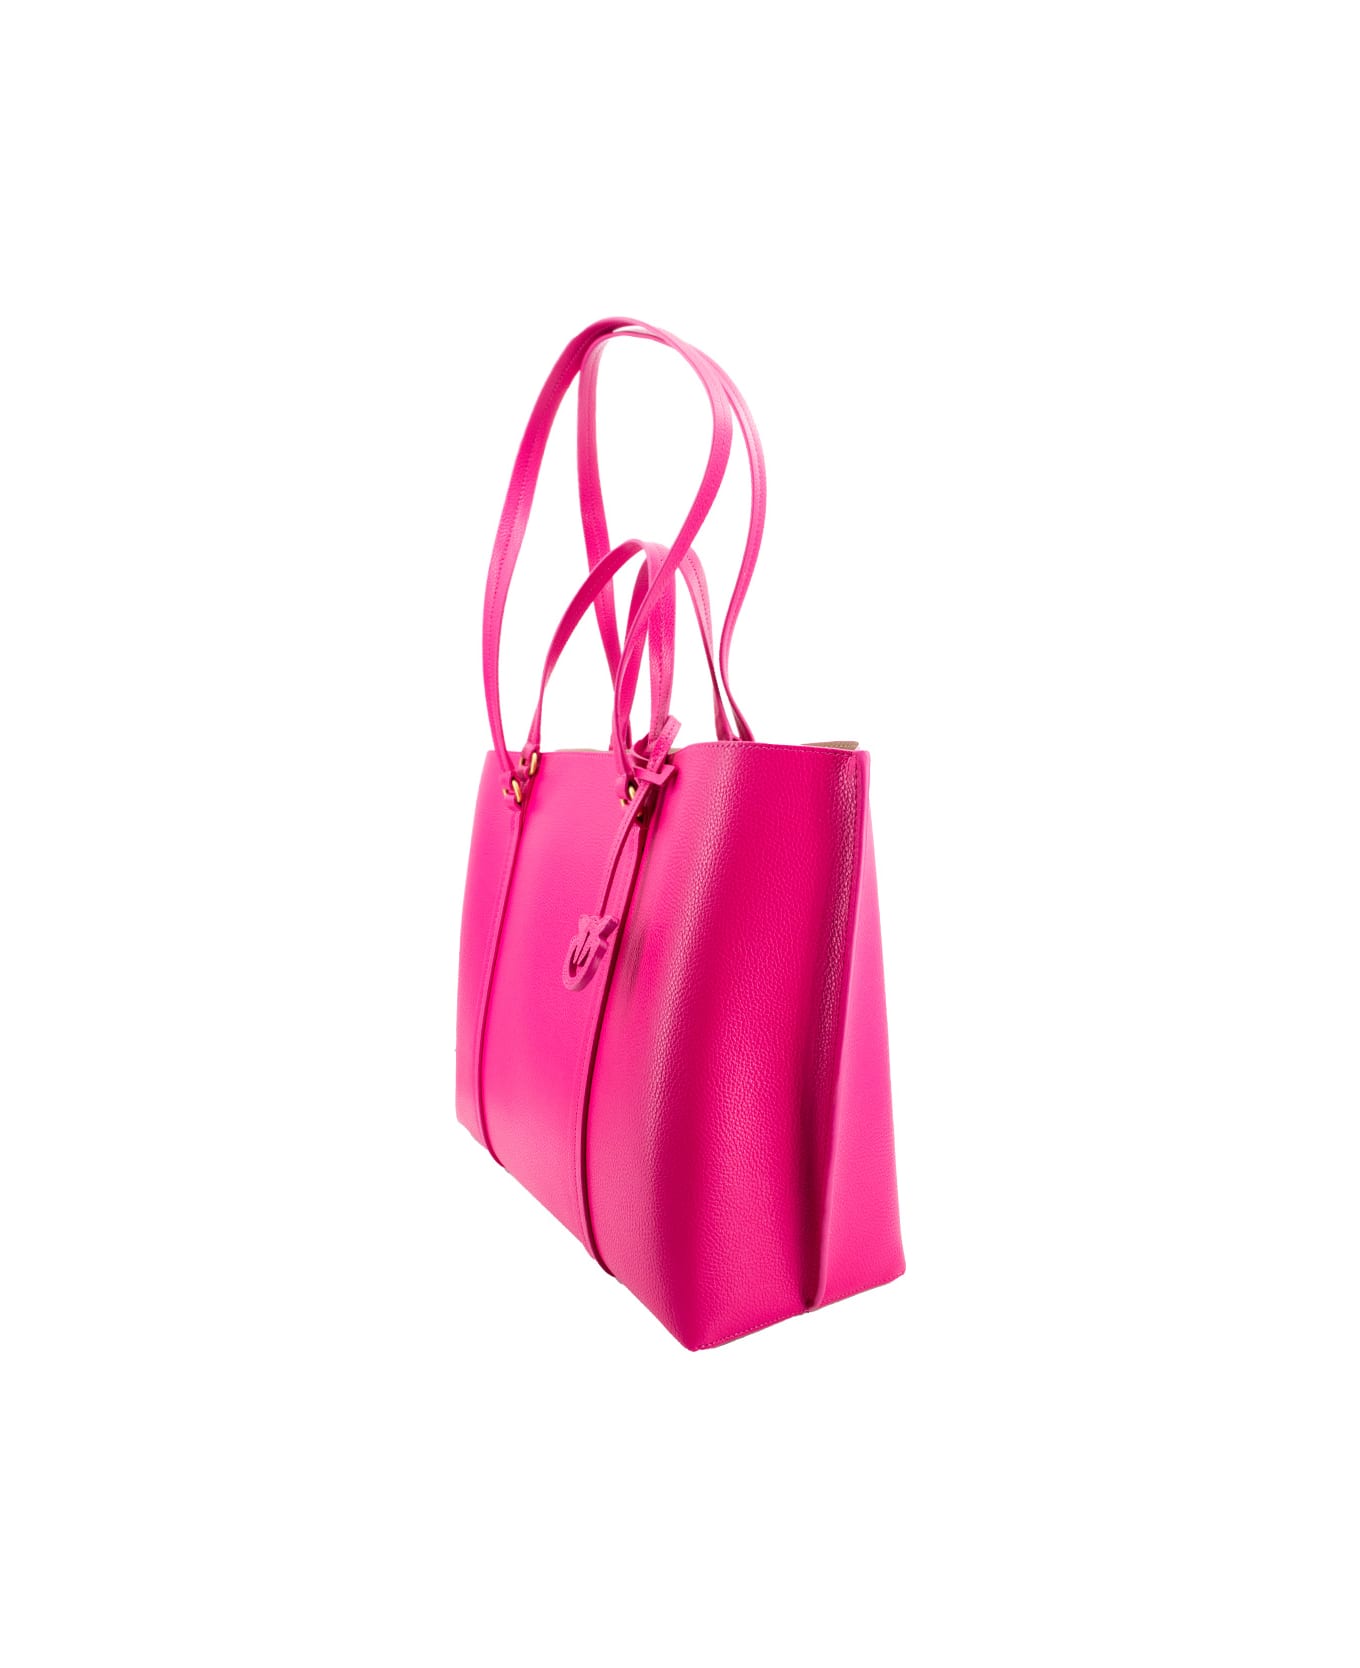 Pinko Carrie Big Shopping Bag - PINK PINKO ANTIQUE GOLD